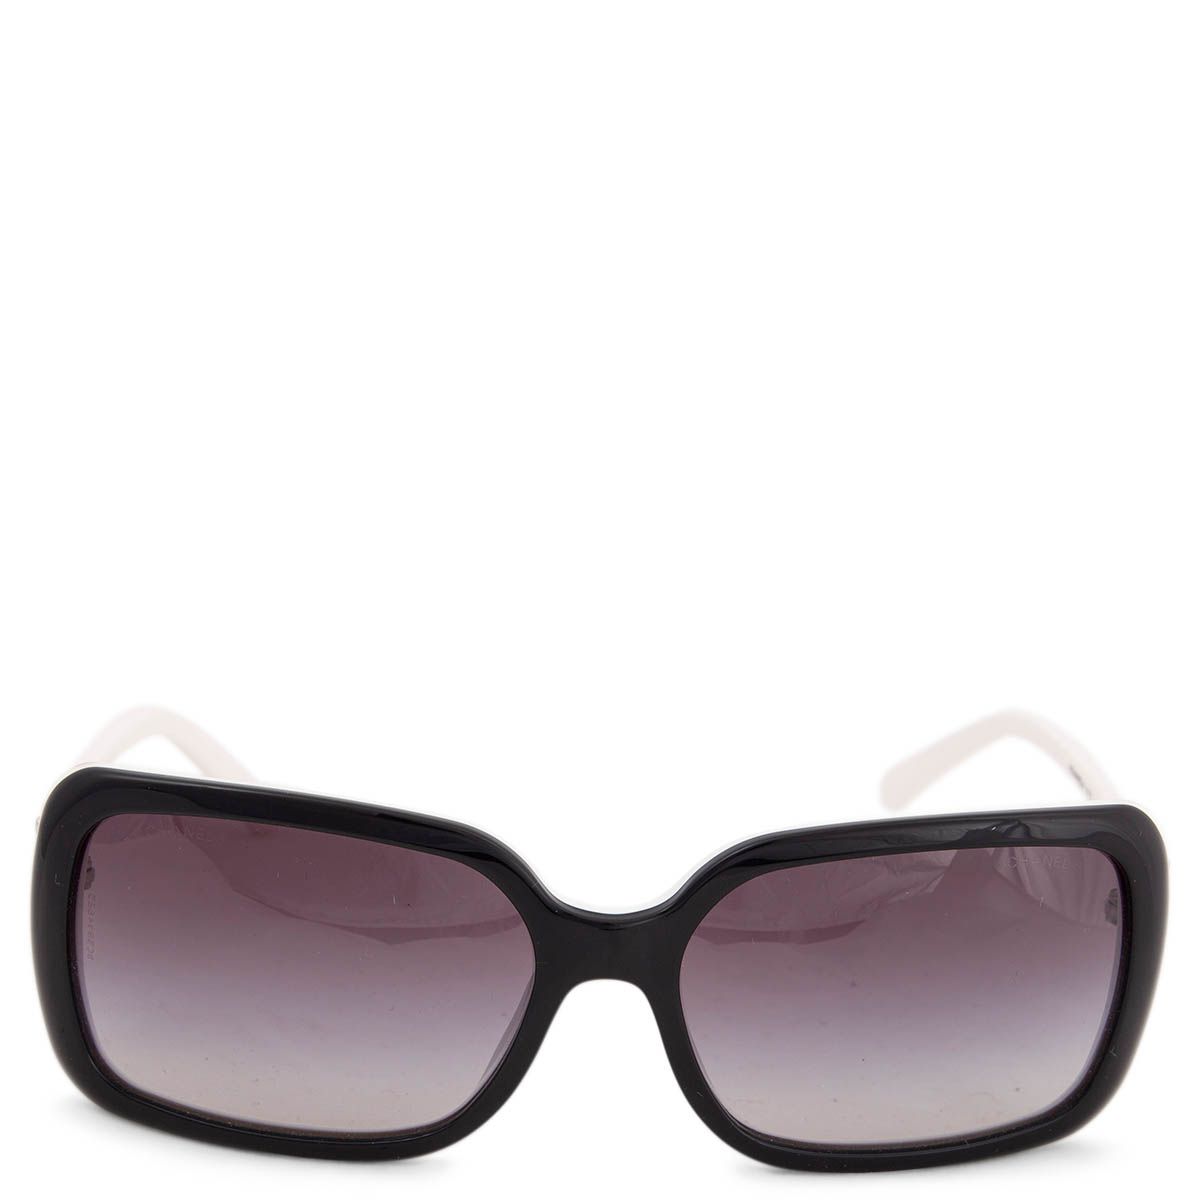 Chanel 5175 Logo Sunglasses Black/White